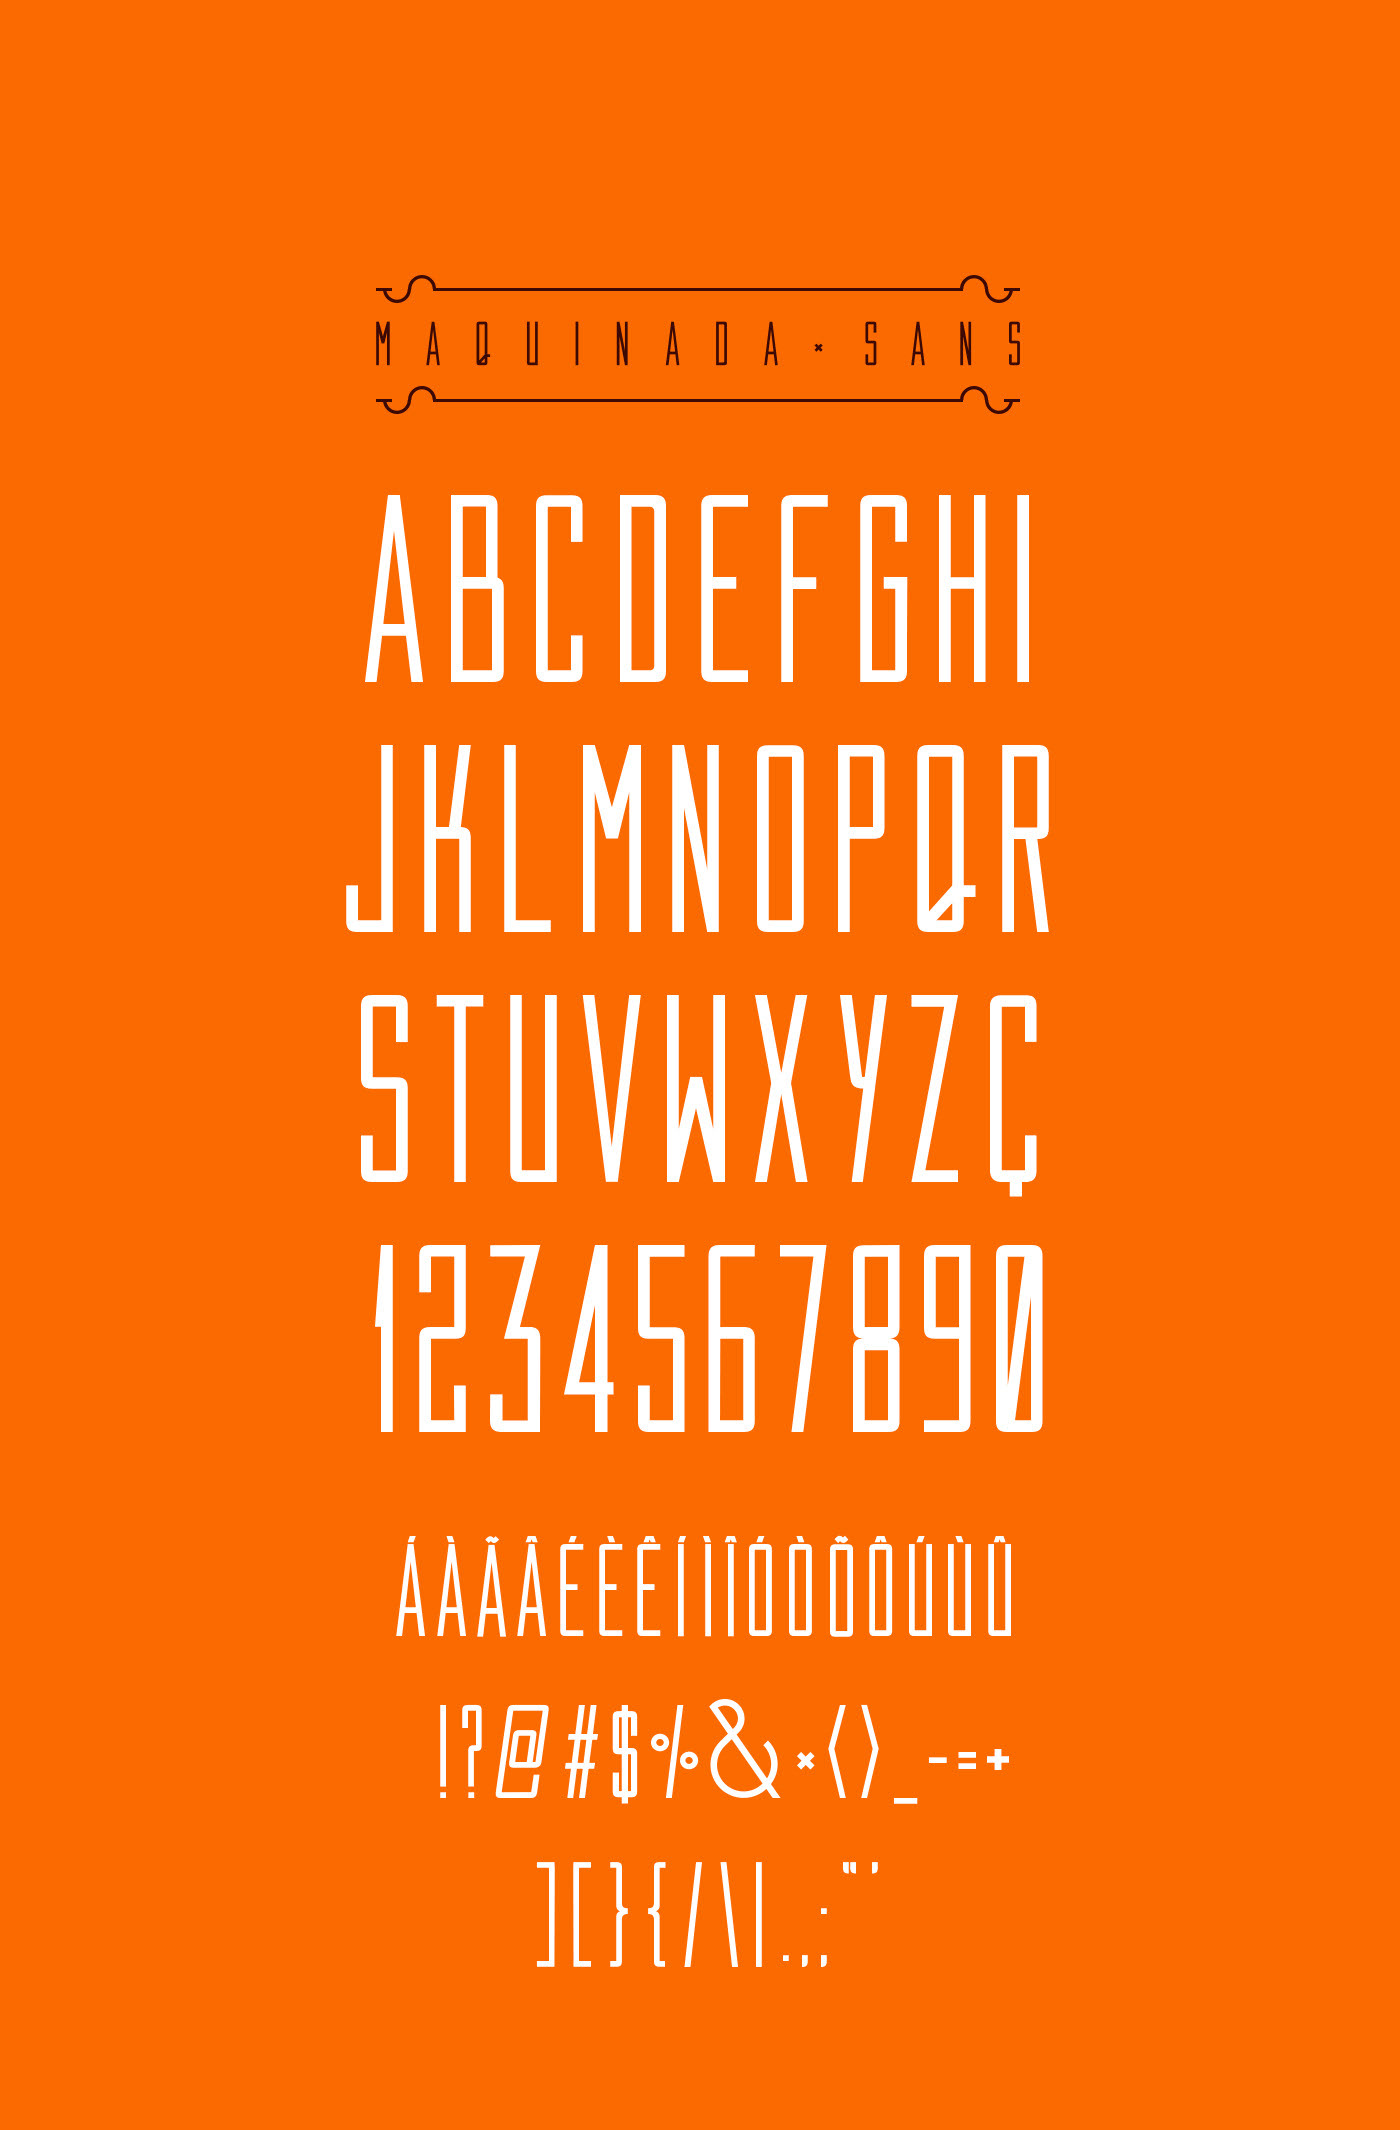 Maquinada Free Font - serif, sans-serif